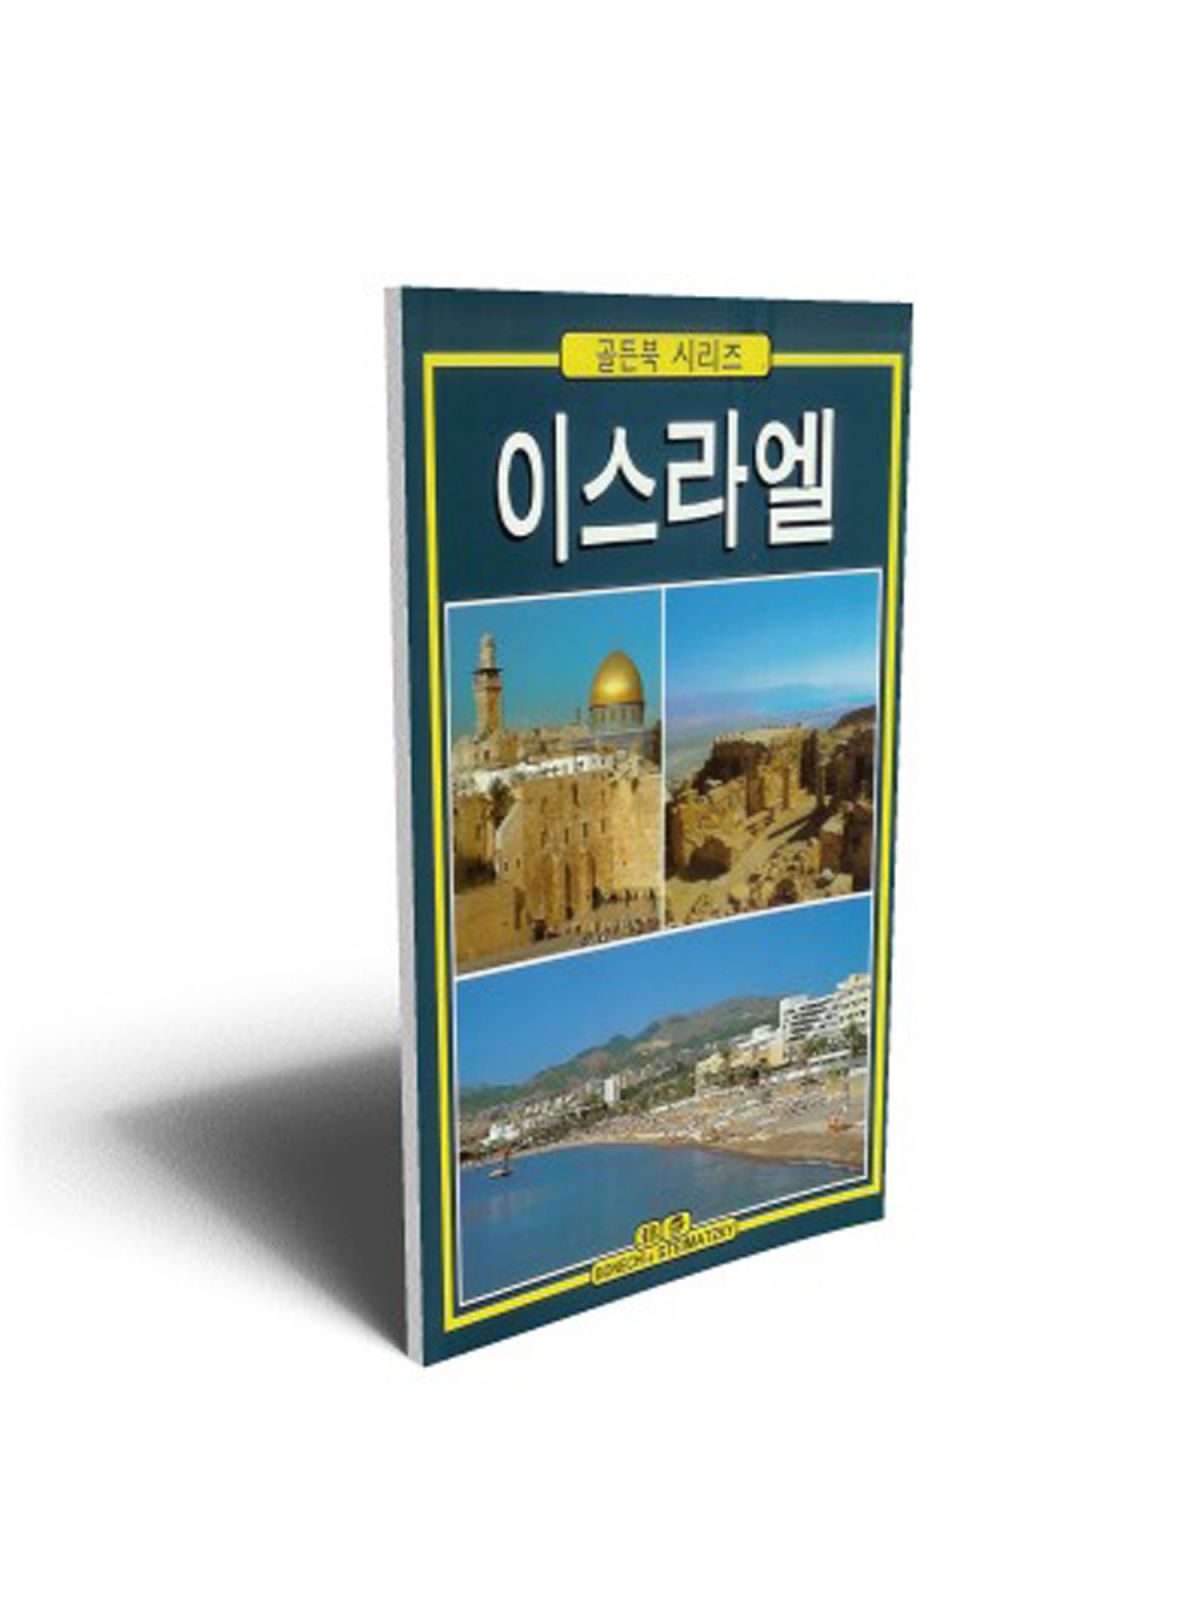 ISRAEL (KOREAN) GOLDEN BONECHI GOLDEN EDITION Купить Книгу на Английском